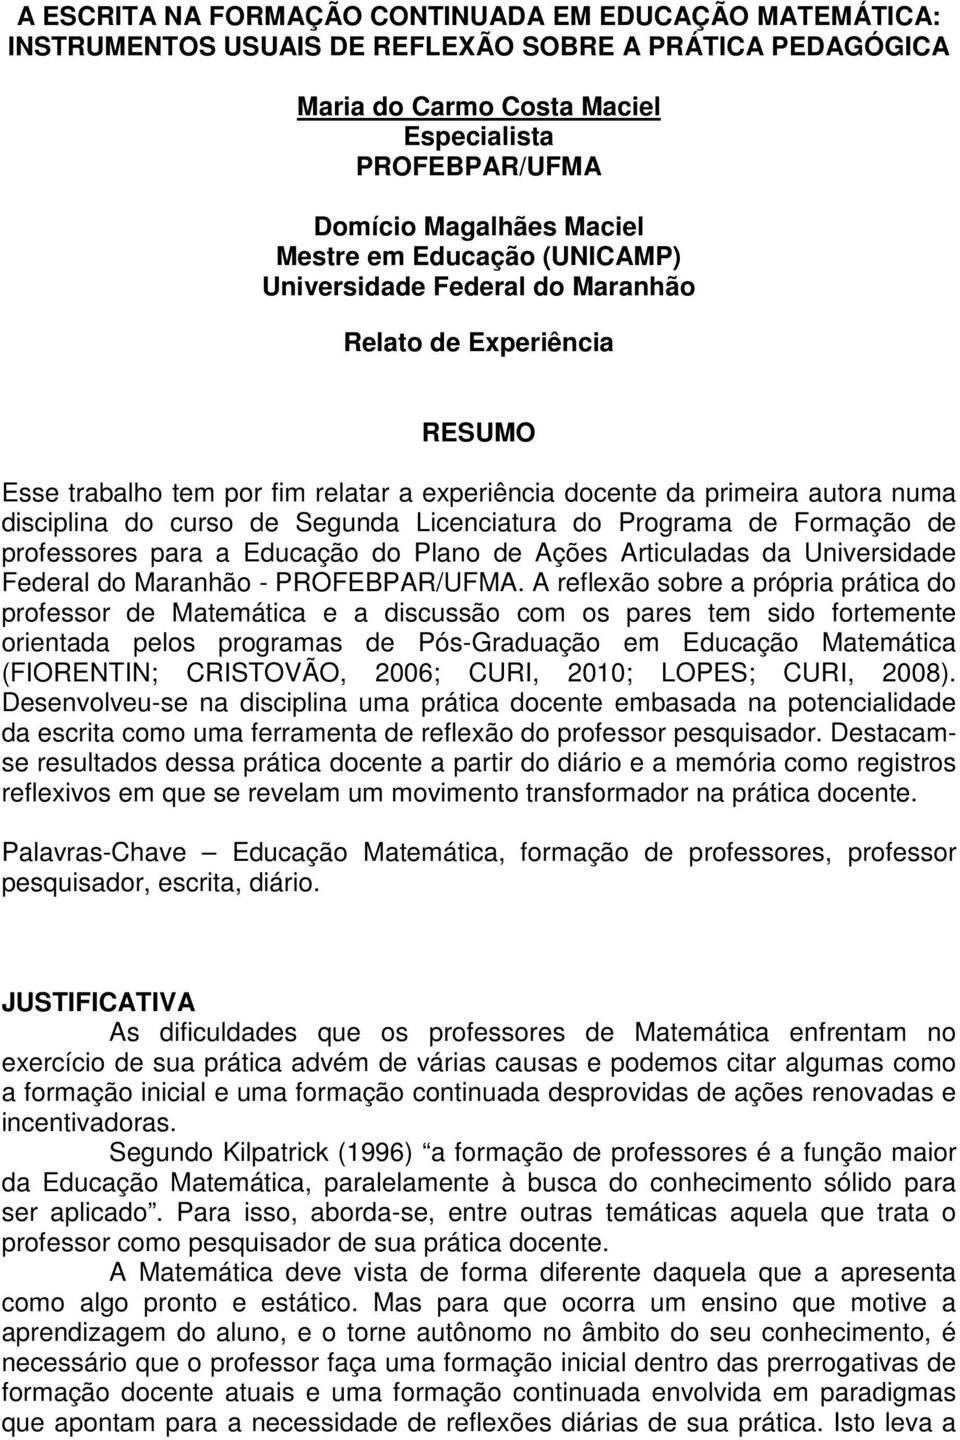 Segunda Licenciatura do Programa de Formação de professores para a Educação do Plano de Ações Articuladas da Universidade Federal do Maranhão - PROFEBPAR/UFMA.